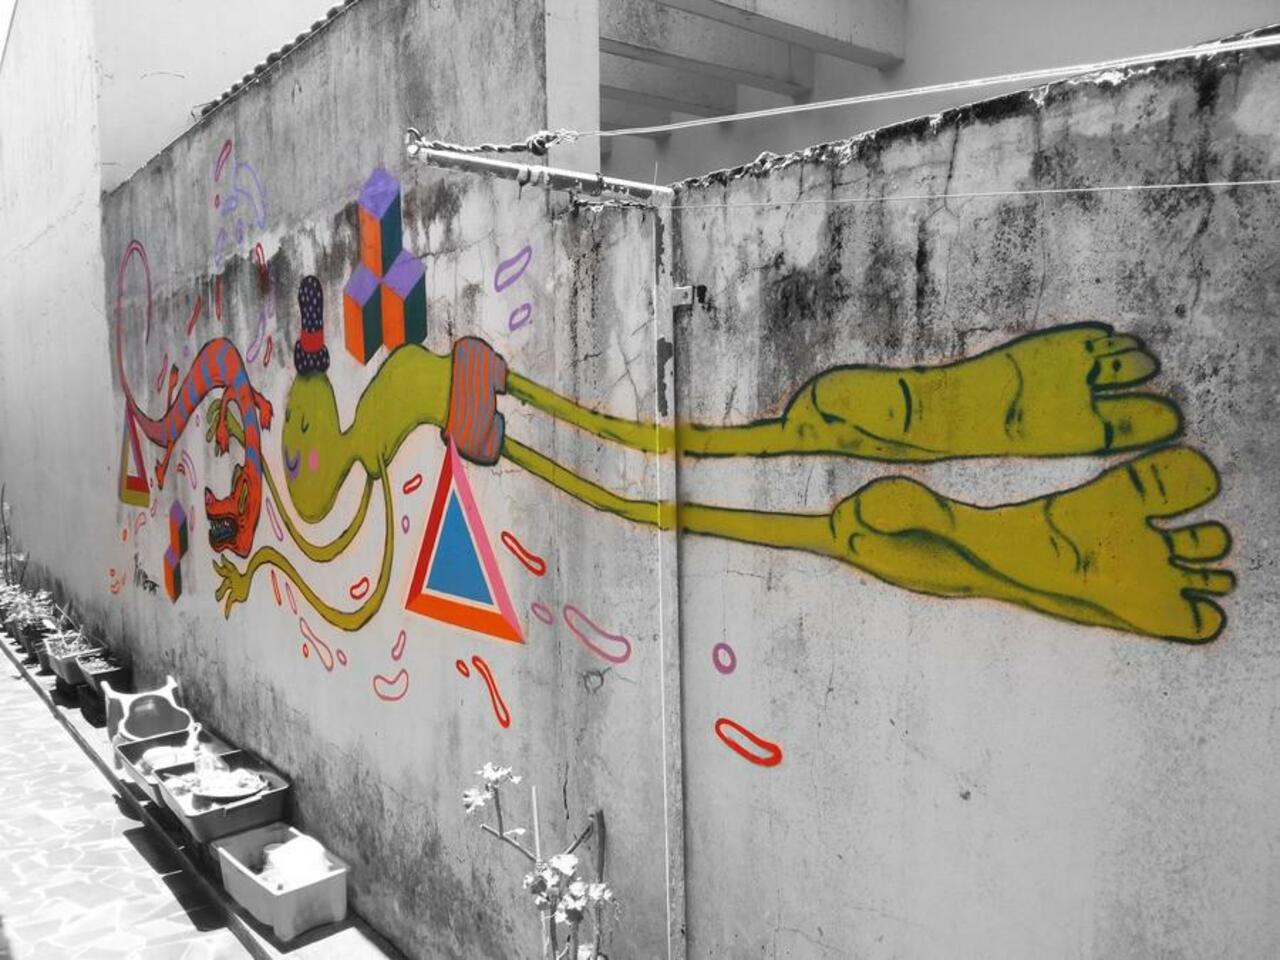 Streetart by Kisso in Brazil
(http://globalstreetart.com/kisso)
Via @globalstreetart #streetart #mural #art #graffiti http://t.co/NJDNtzD9qT